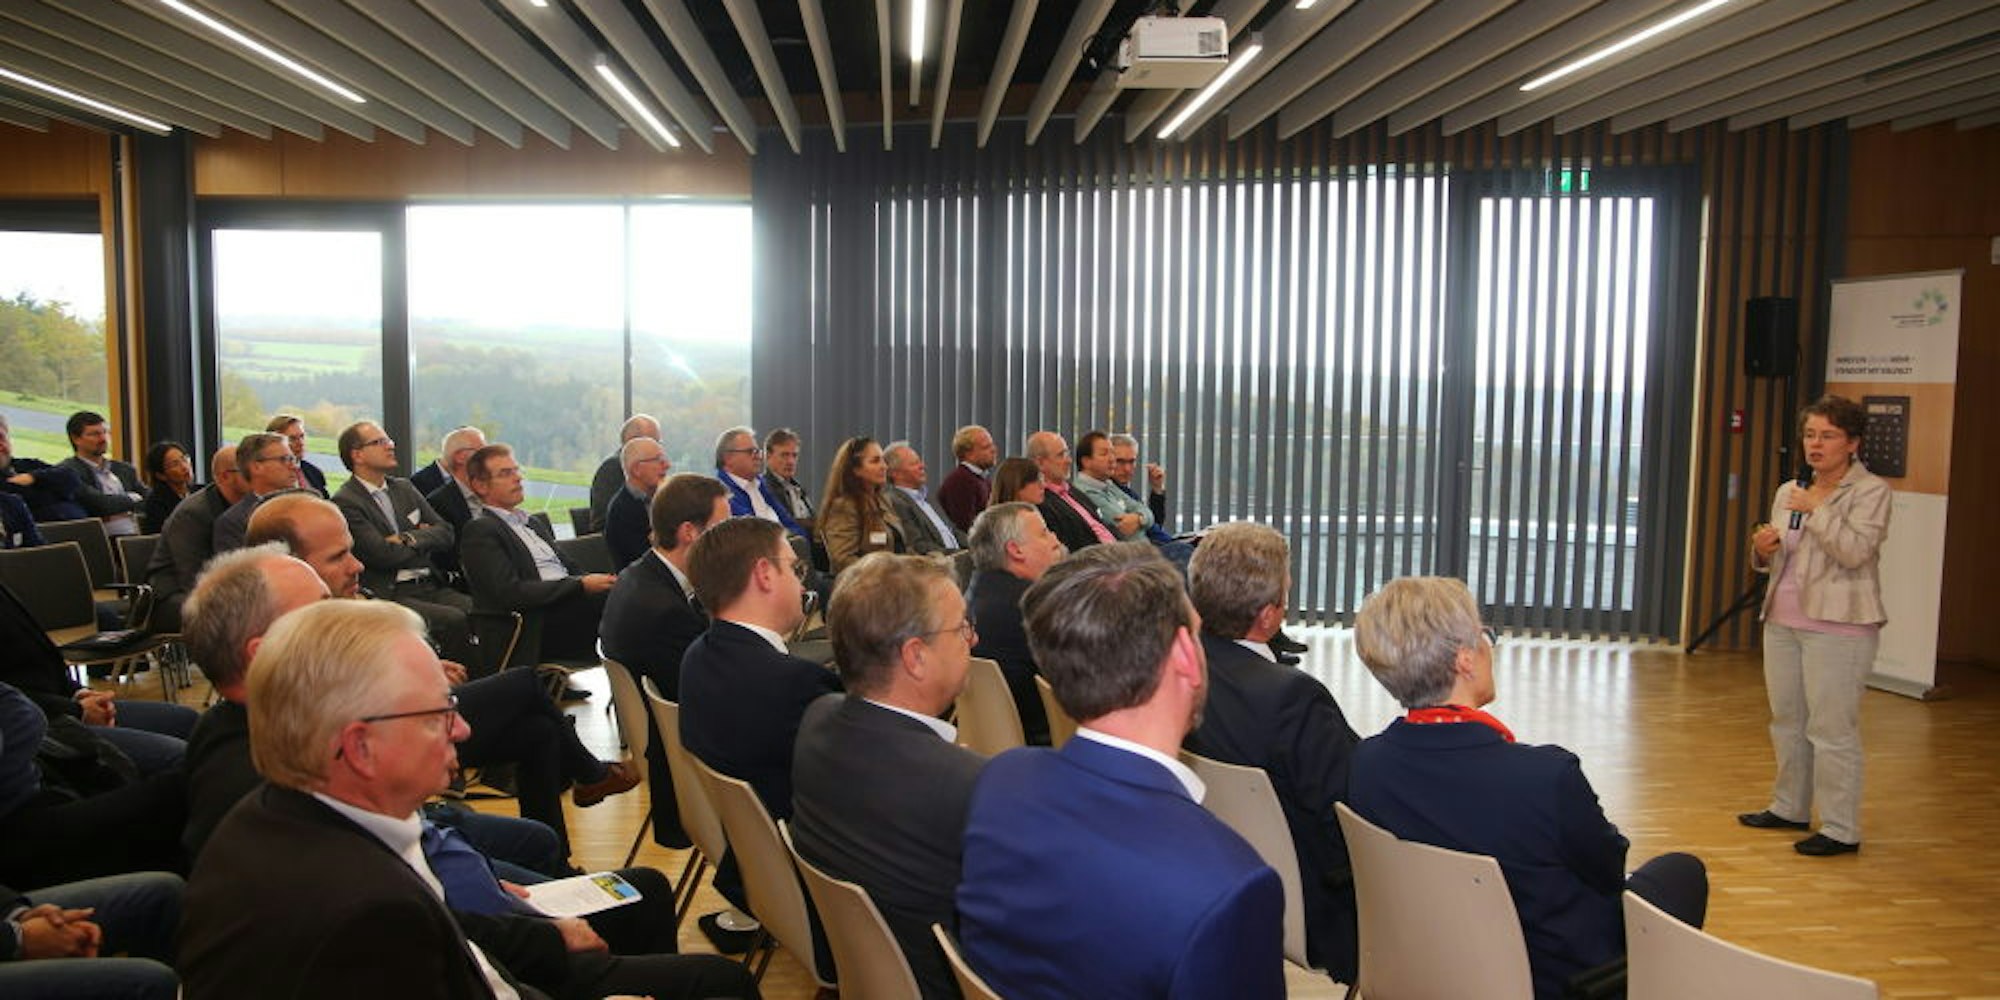 Rund 70 Teilnehmer waren zur Tagung über den Strukturwandel im Rheinischen Revier gekommen. Alexandra Landsberg (r.) vom Wirtschaftsministerium NRW und Ralph Sterck, Leiter der Zukunftsagentur Rheinisches Revier, hielten Vorträge.